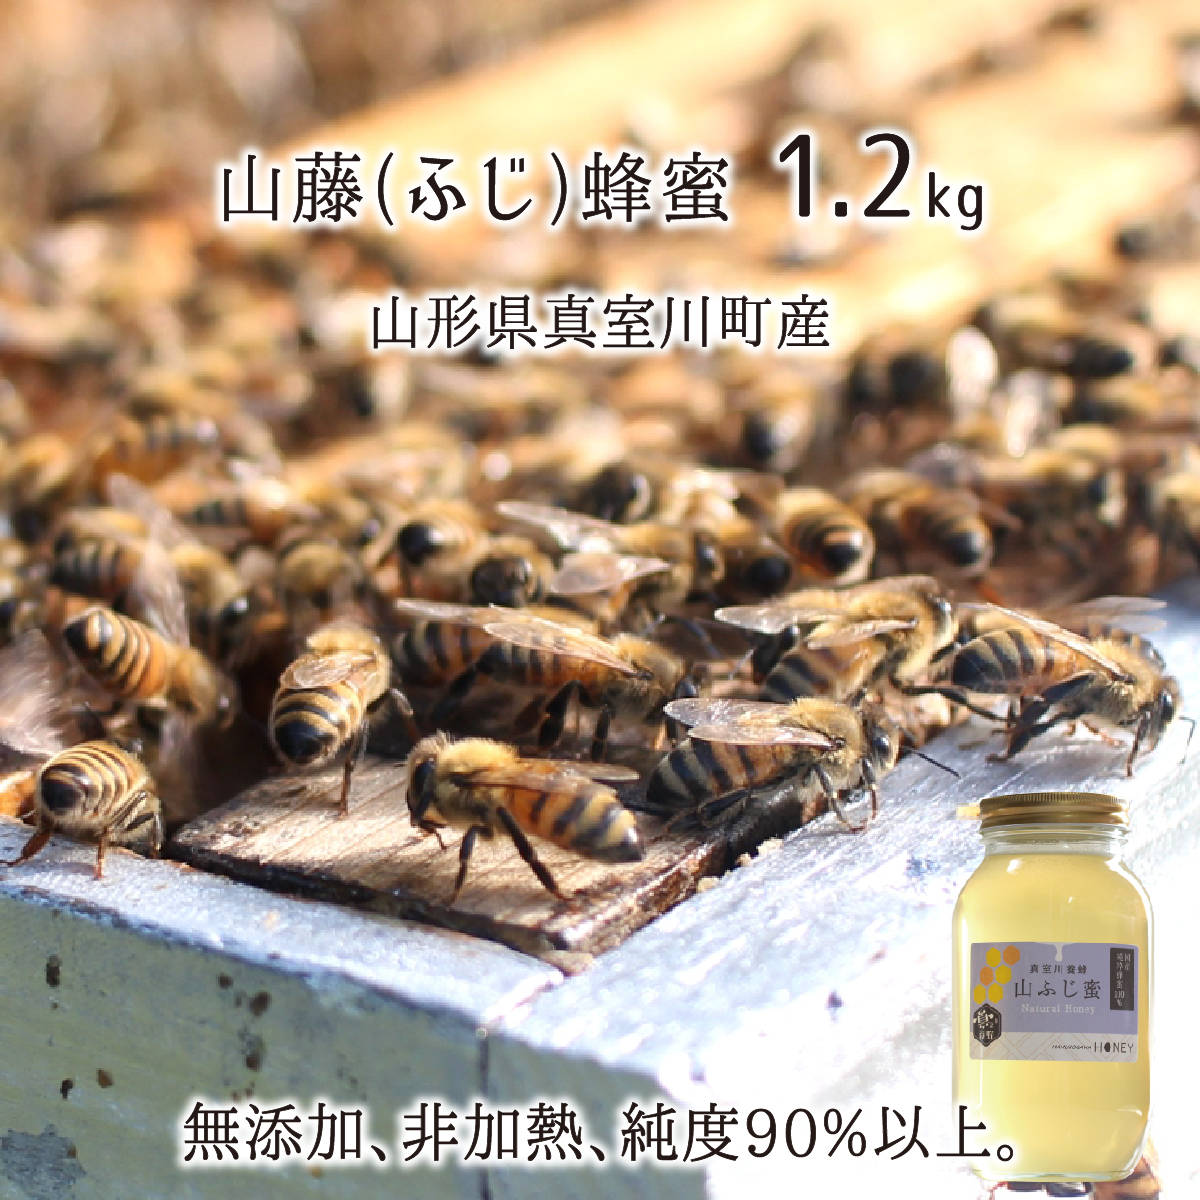 山藤蜂蜜(糖度80以上、純度90以上) 無添加 非加熱 全原